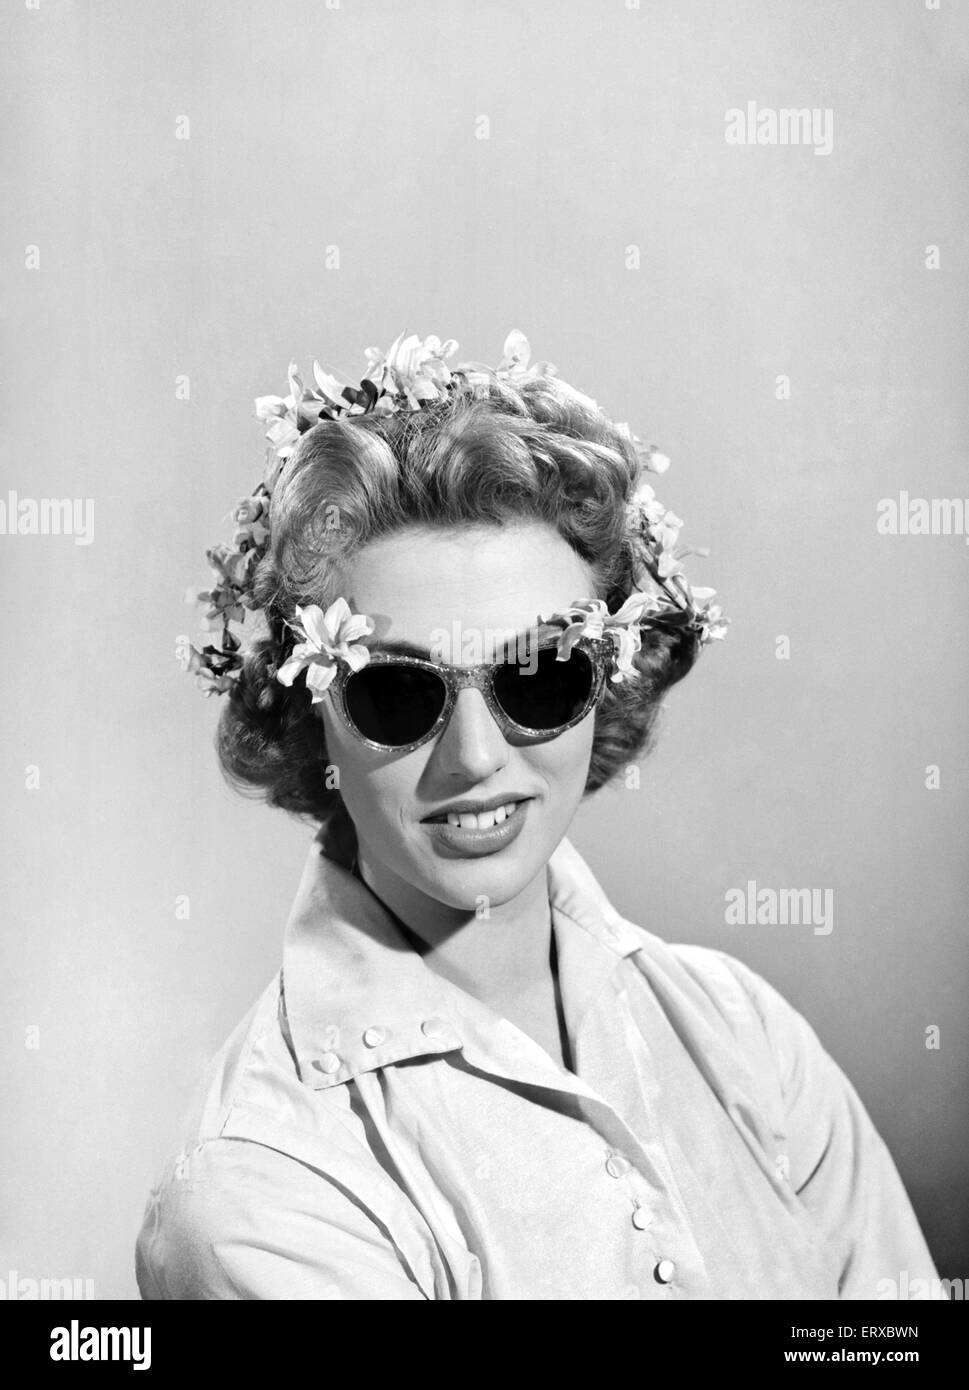 Le port de lunettes modèle décoré de fleurs. 1955 Banque D'Images